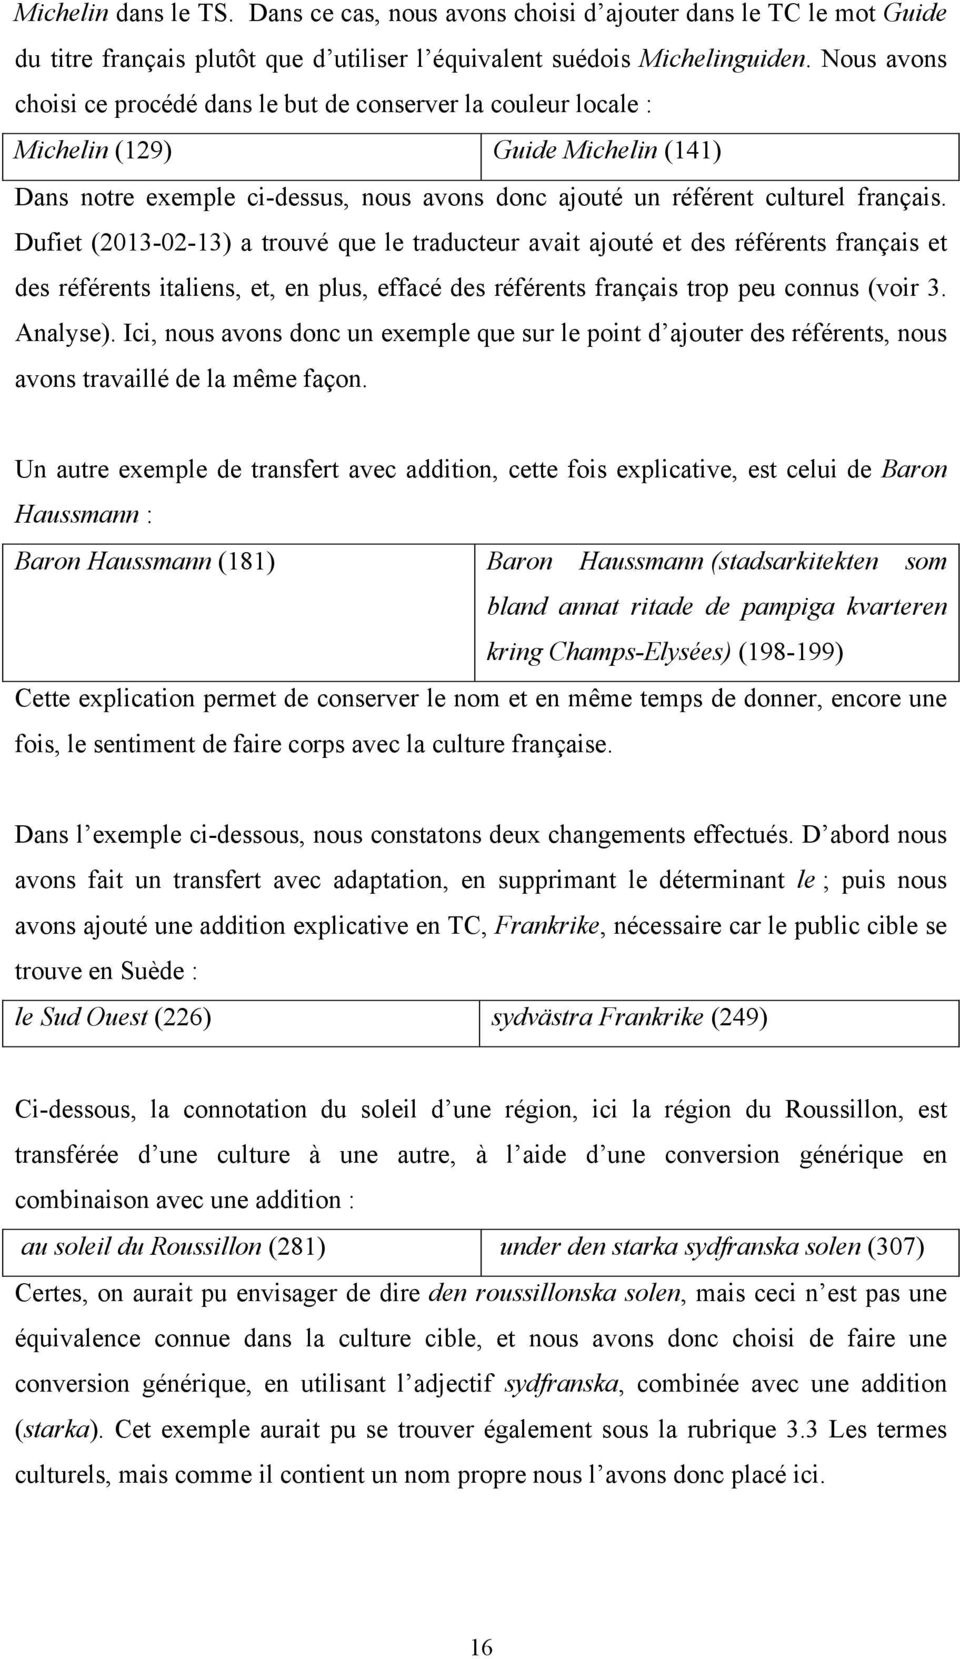 Dufiet (2013-02-13) a trouvé que le traducteur avait ajouté et des référents français et des référents italiens, et, en plus, effacé des référents français trop peu connus (voir 3. Analyse).